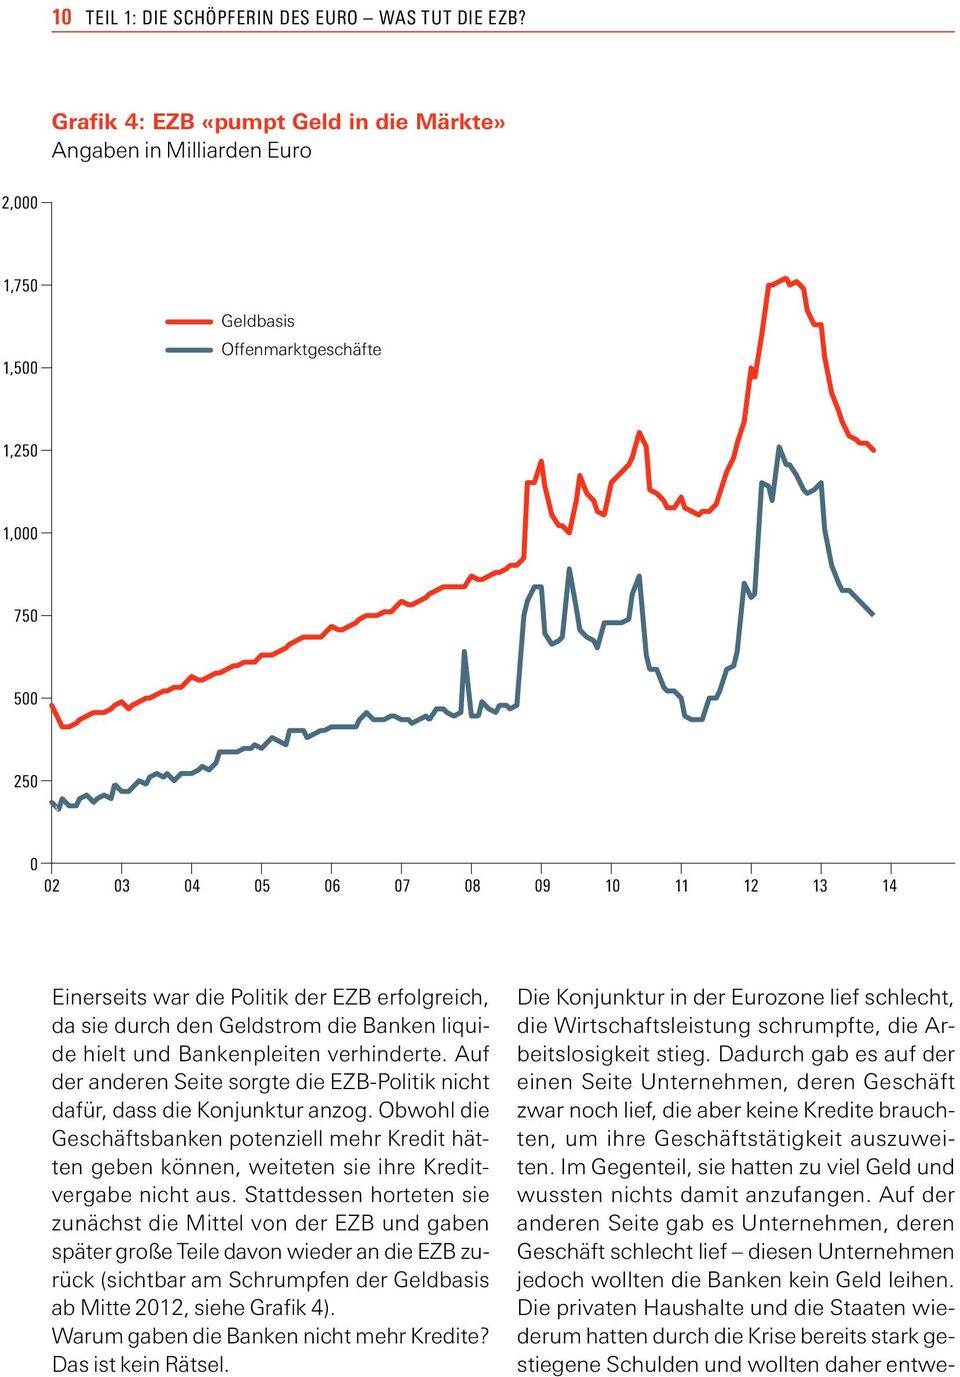 Politik der EZB erfolgreich, da sie durch den Geldstrom die Banken liquide hielt und Bankenpleiten verhinderte. Auf der anderen Seite sorgte die EZB-Politik nicht dafür, dass die Konjunktur anzog.